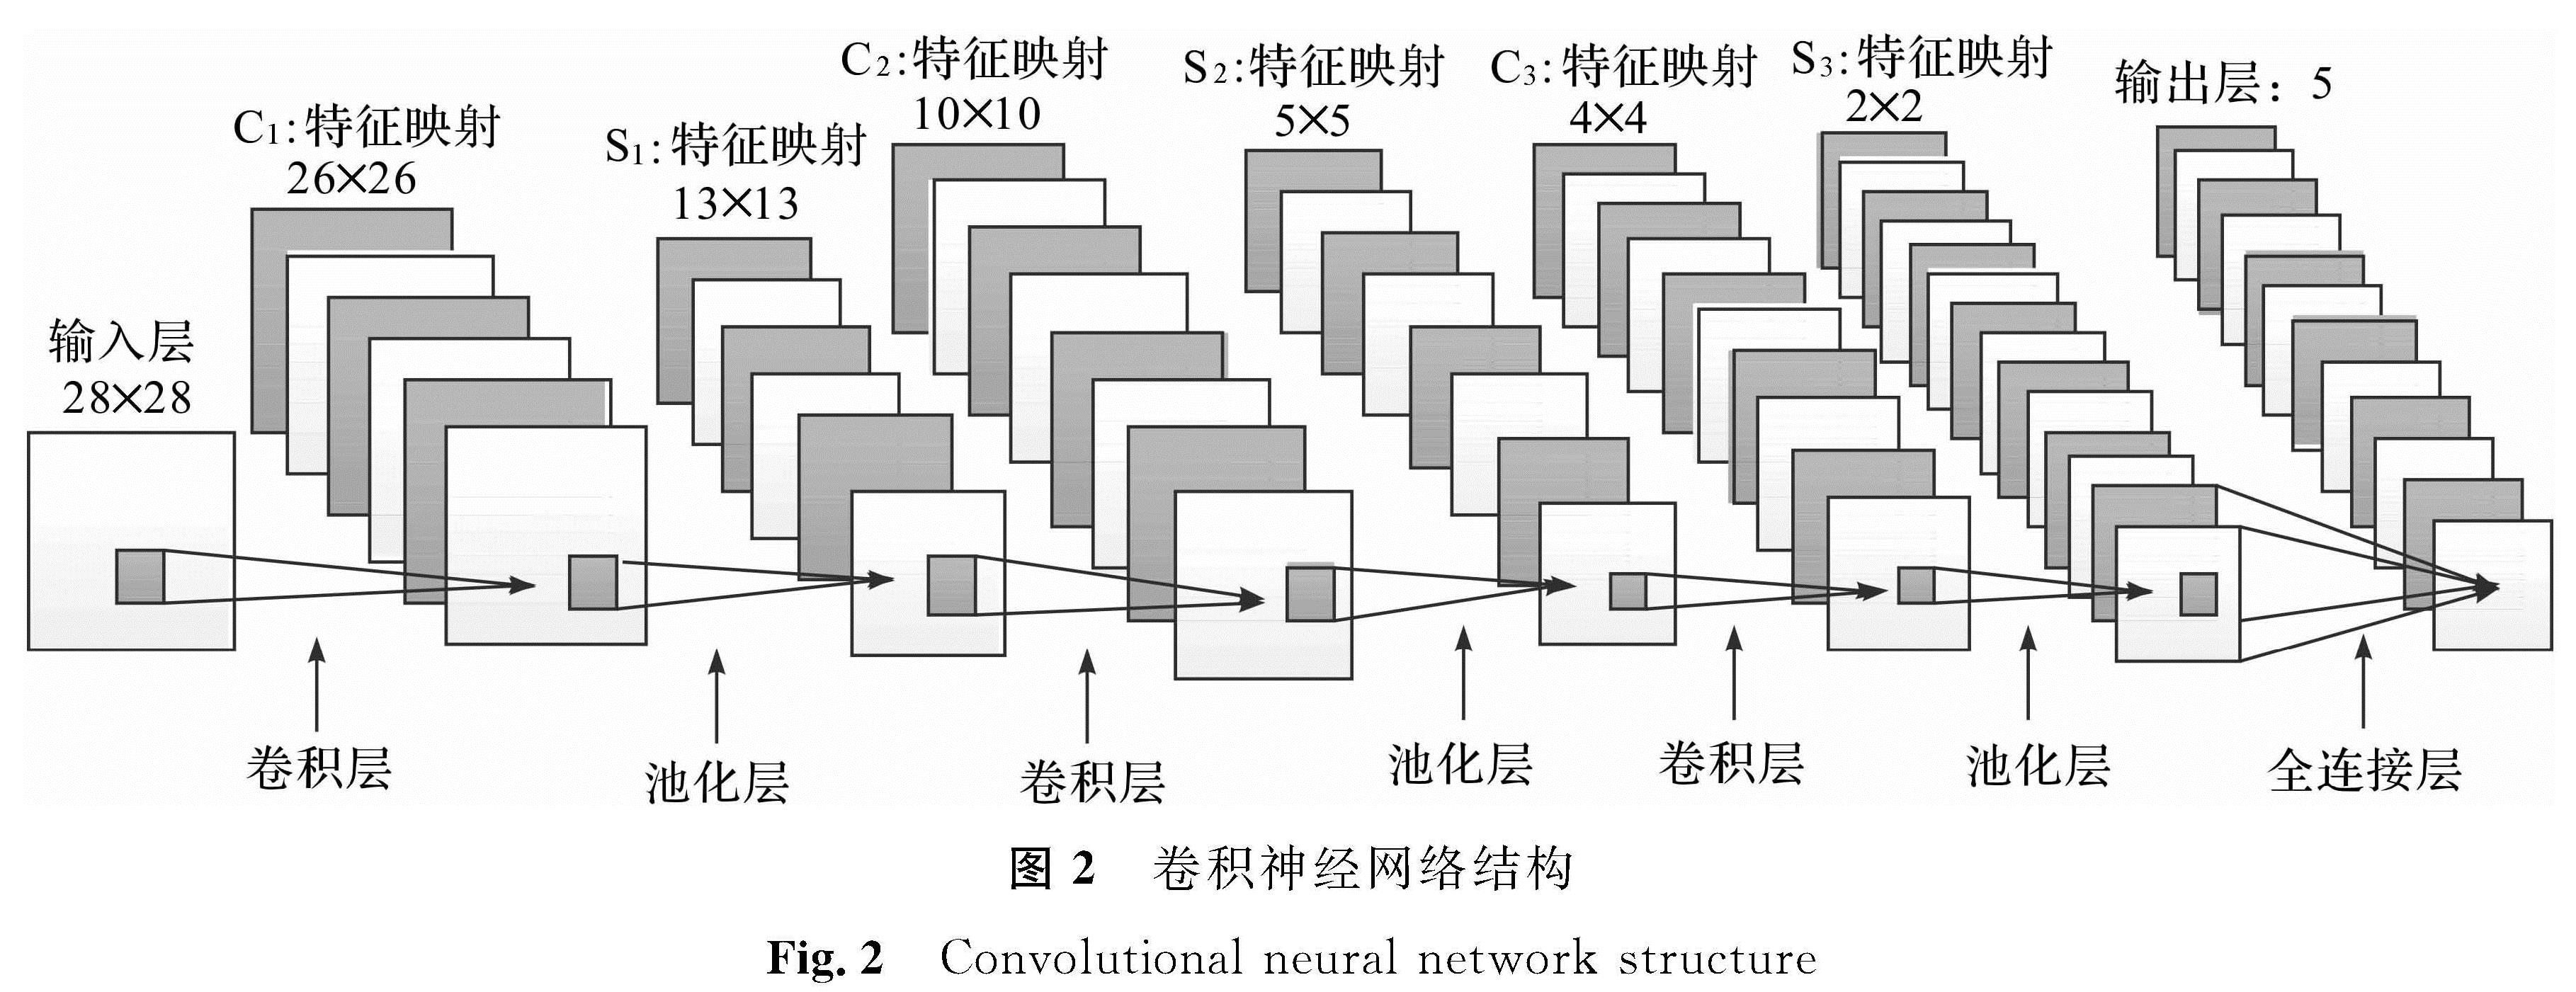 图2 卷积神经网络结构<br/>Fig.2 Convolutional neural network structure